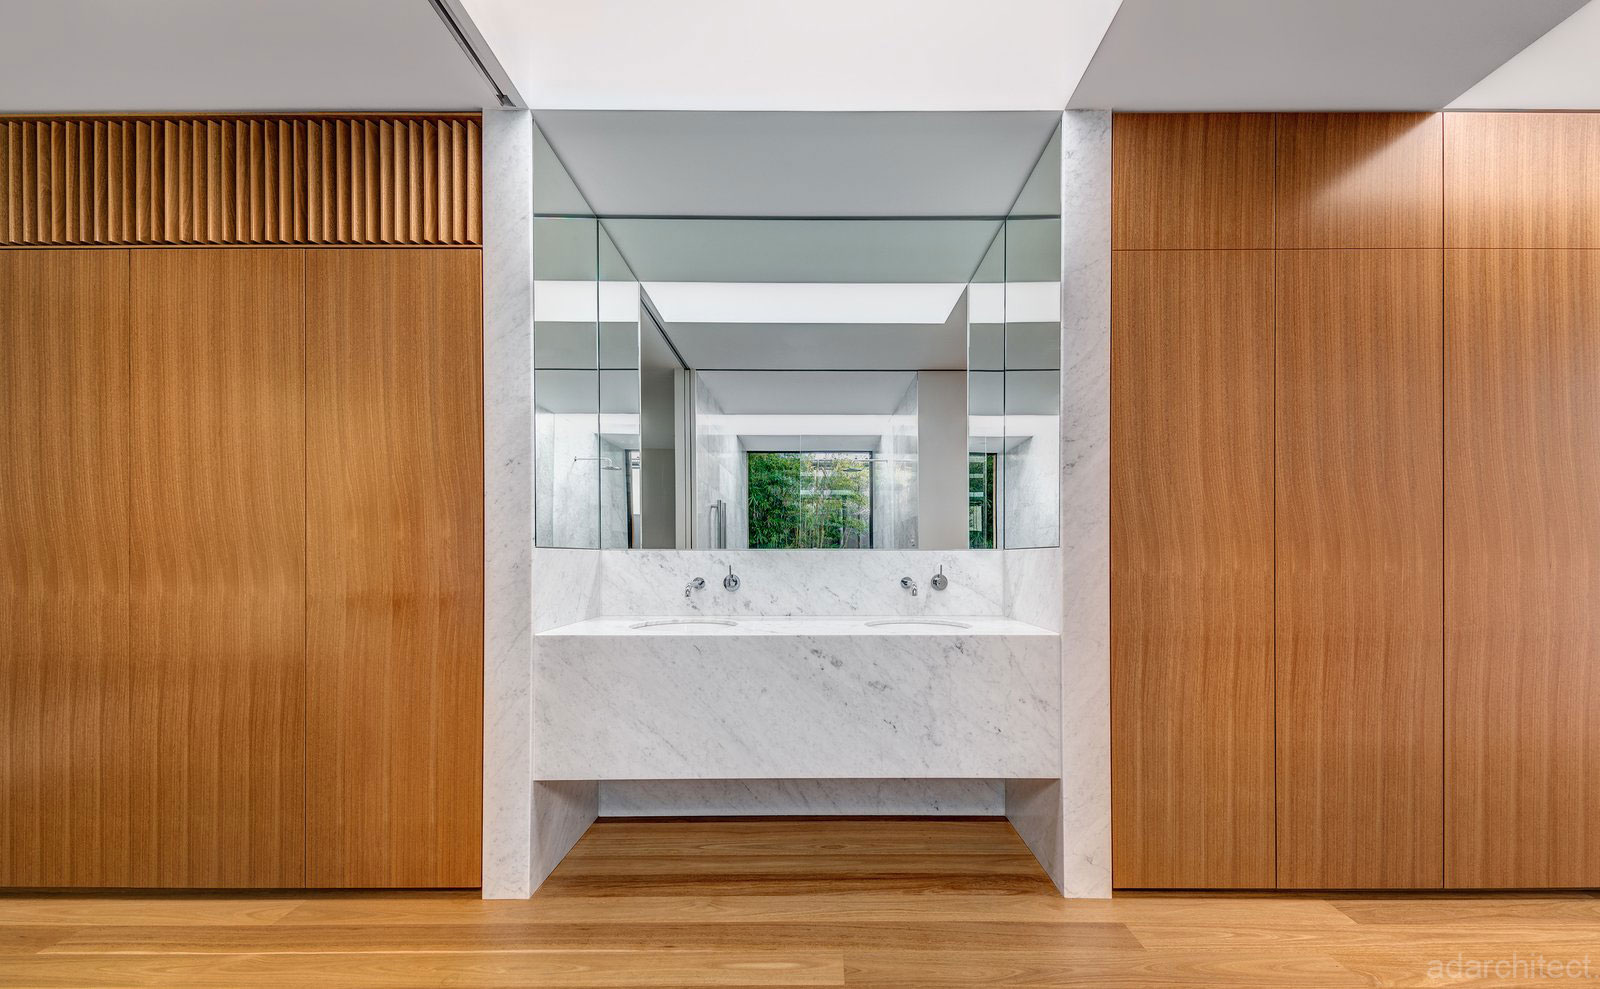 biệt thự nhà vườn 2 tầng: bồn rửa tay cao cấp cạnh tủ gỗ bền đẹp